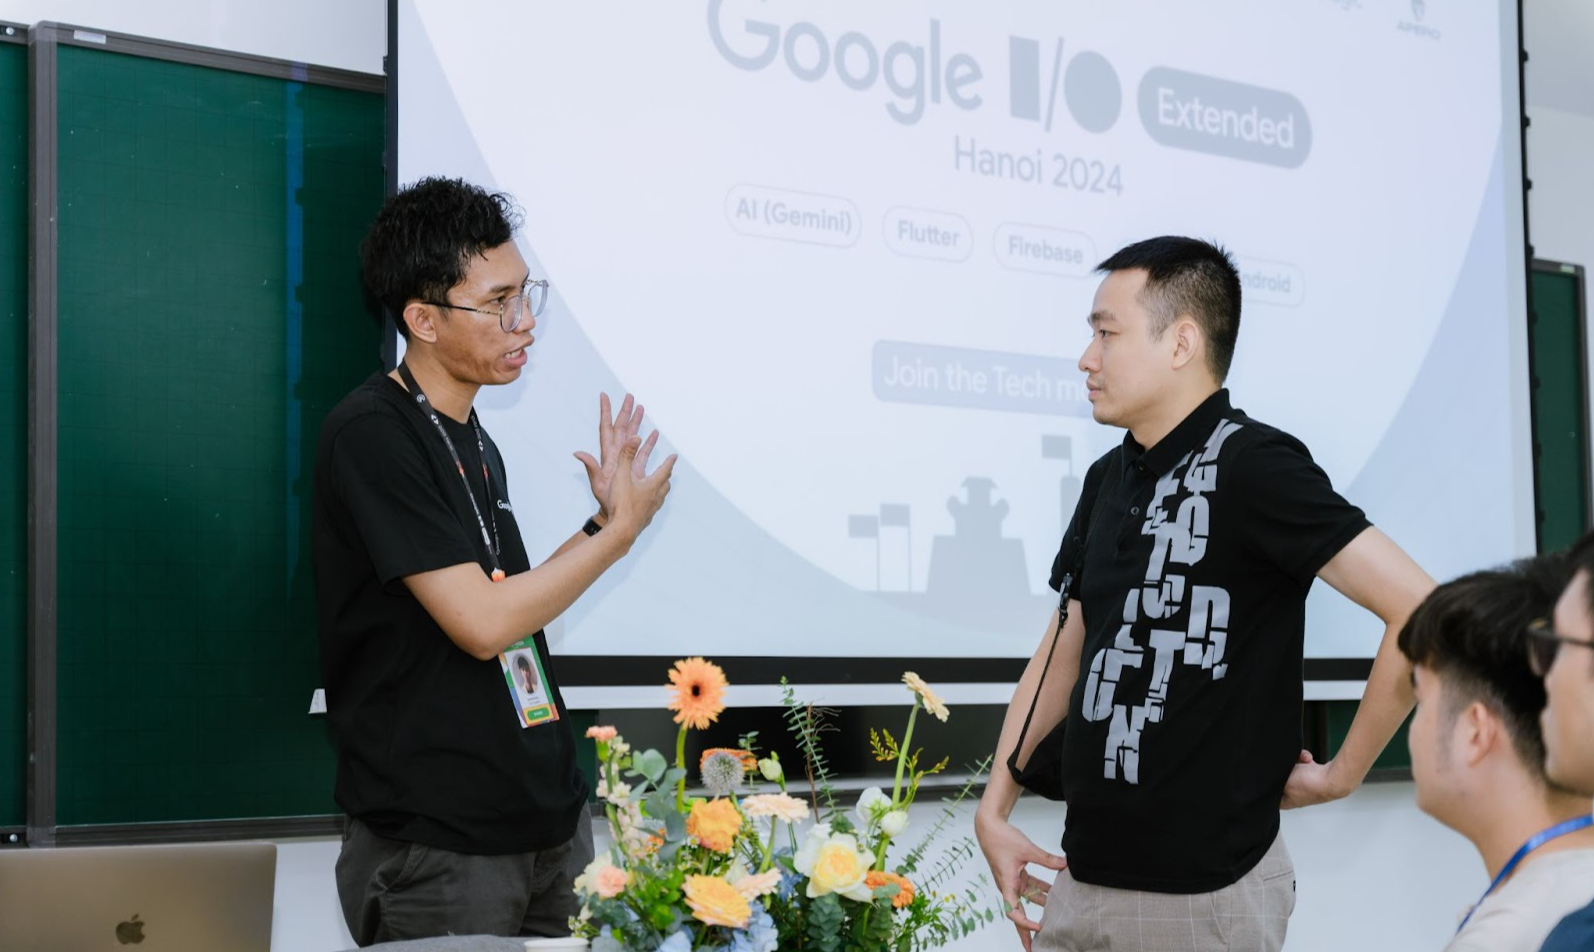 Google I/O Extended Hanoi 2024: Hơn 500 lập trình viên cập nhật công nghệ mới và kết nối cộng đồng